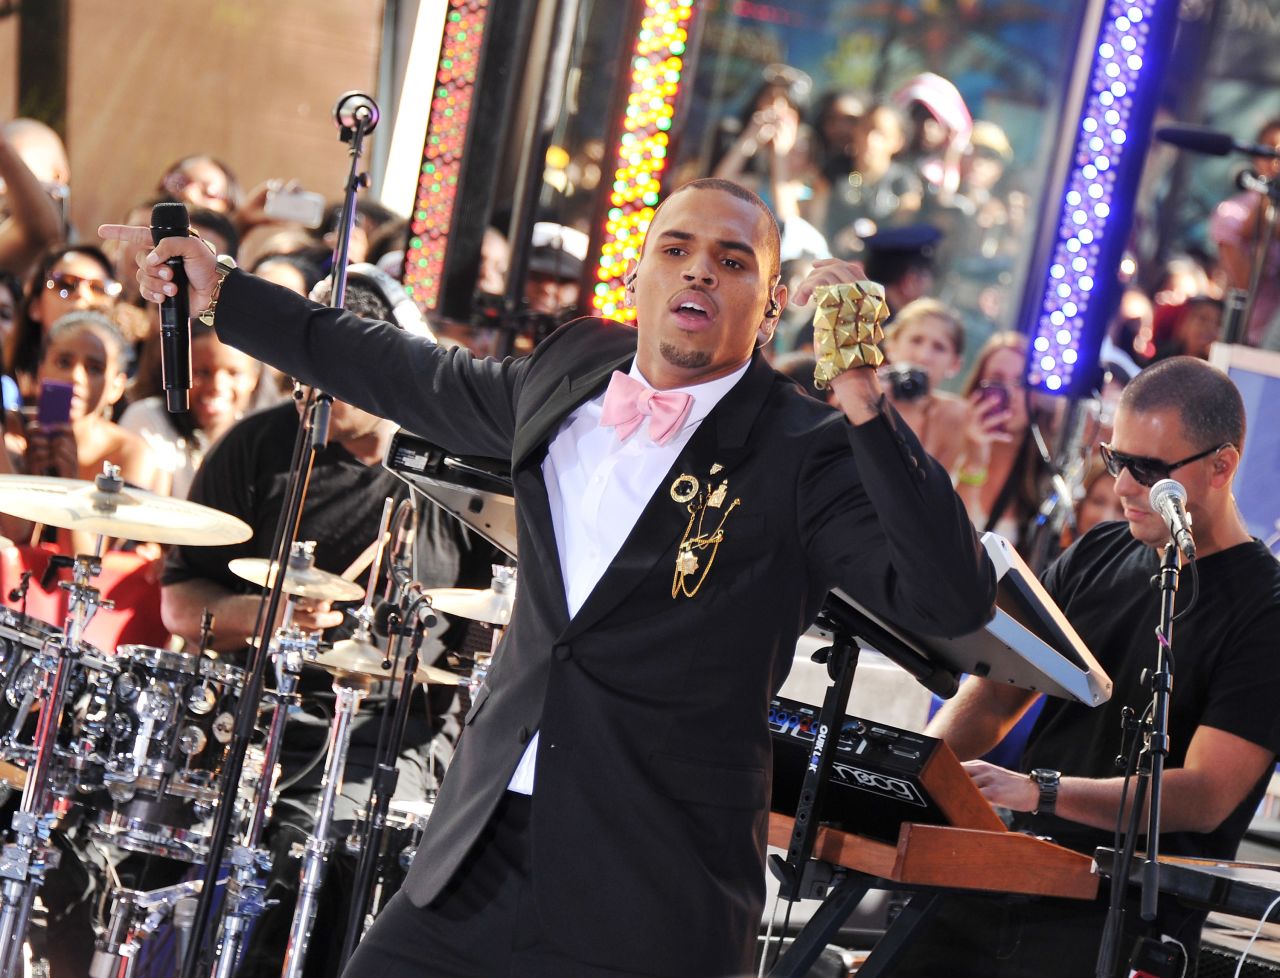 En 2011, "F.A.M.E.", el álbum de Brown, debutó en la posición número 1 en el ranking de éxitos Billboard 200. Aquí, se presenta ese verano en el programa "Today" de NBC.